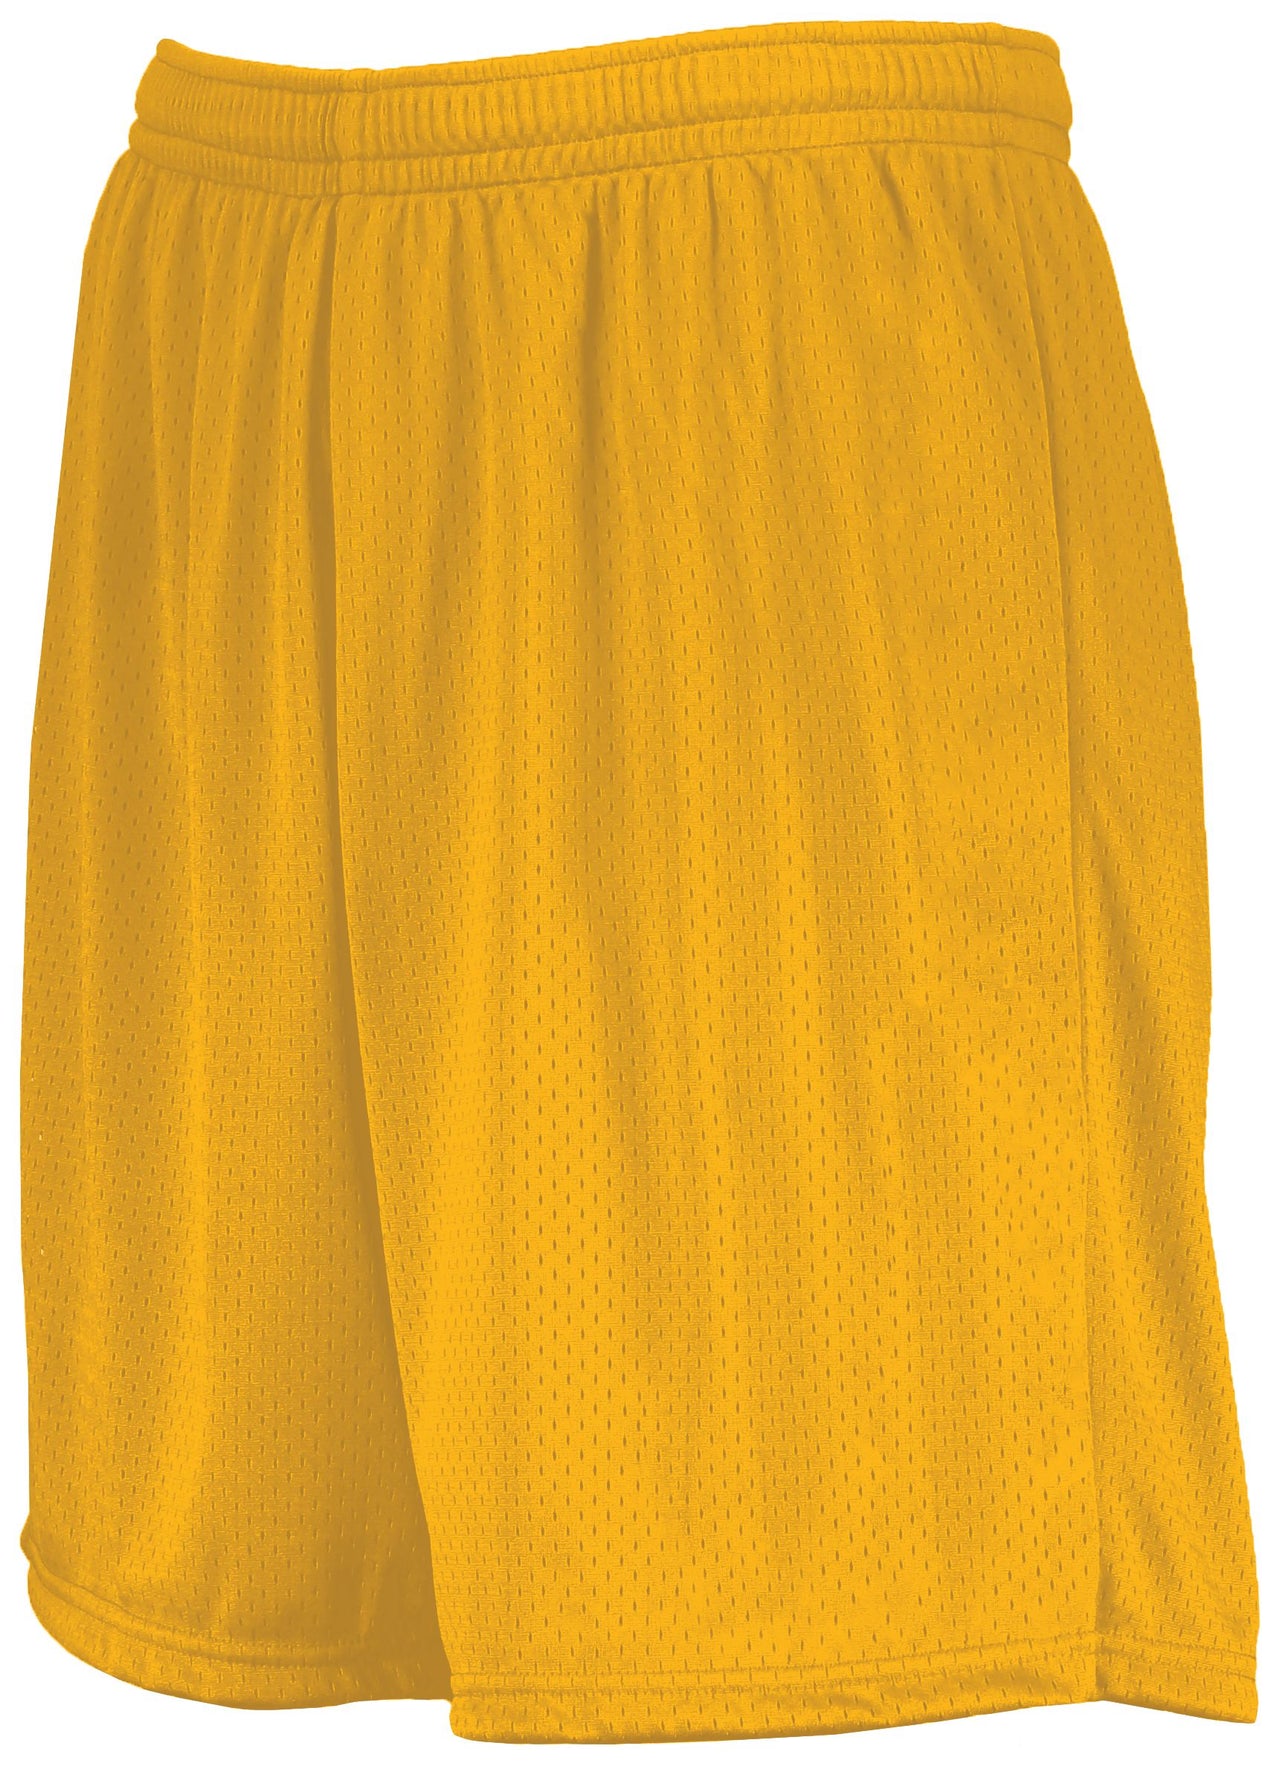 7-Inch Modified Mesh Shorts - 1850